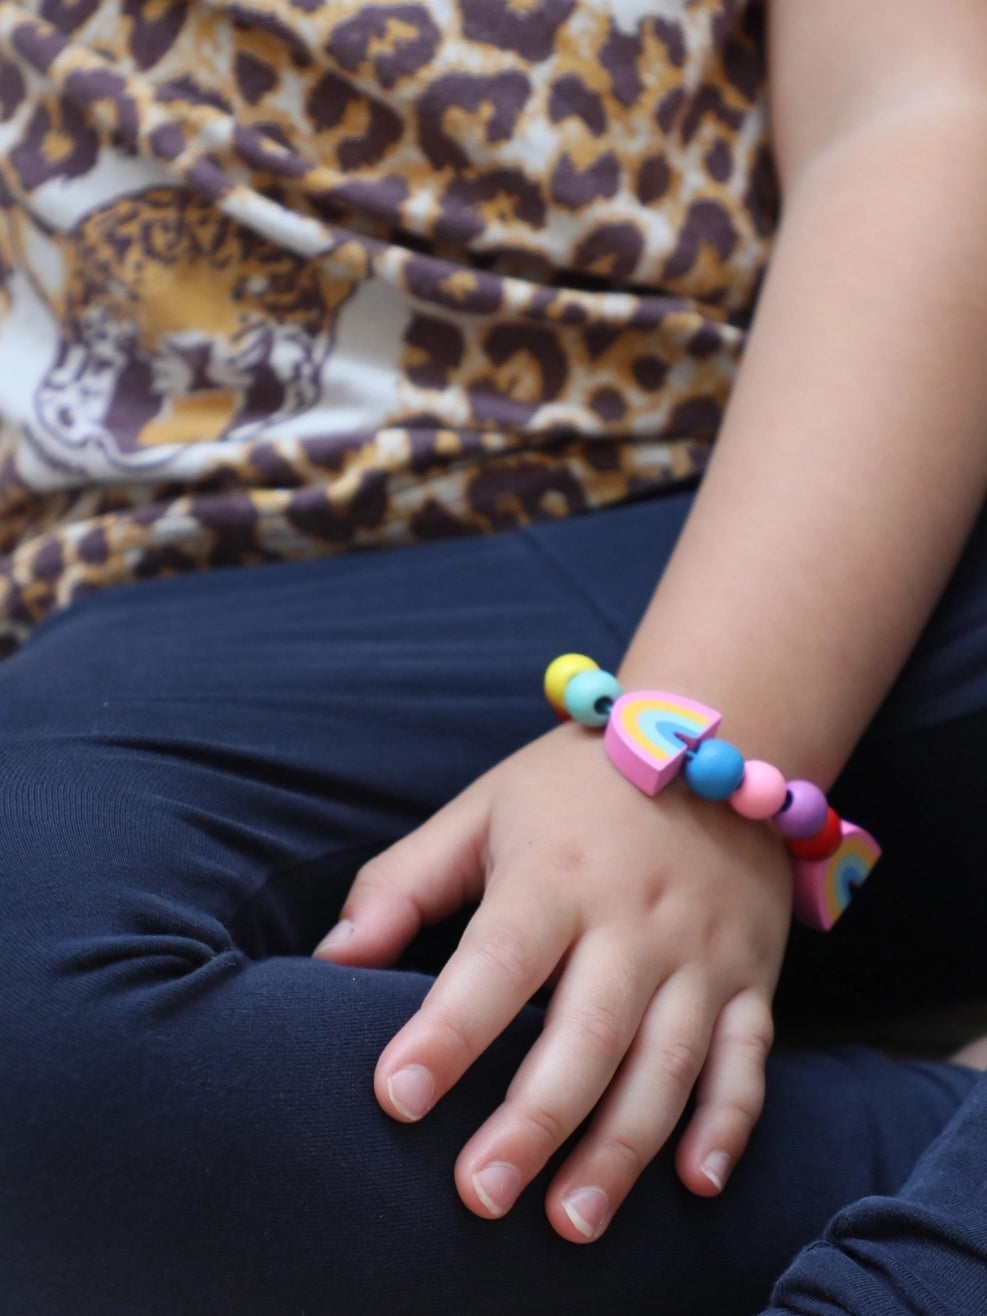 Rainbow Bracelet Gift Kit